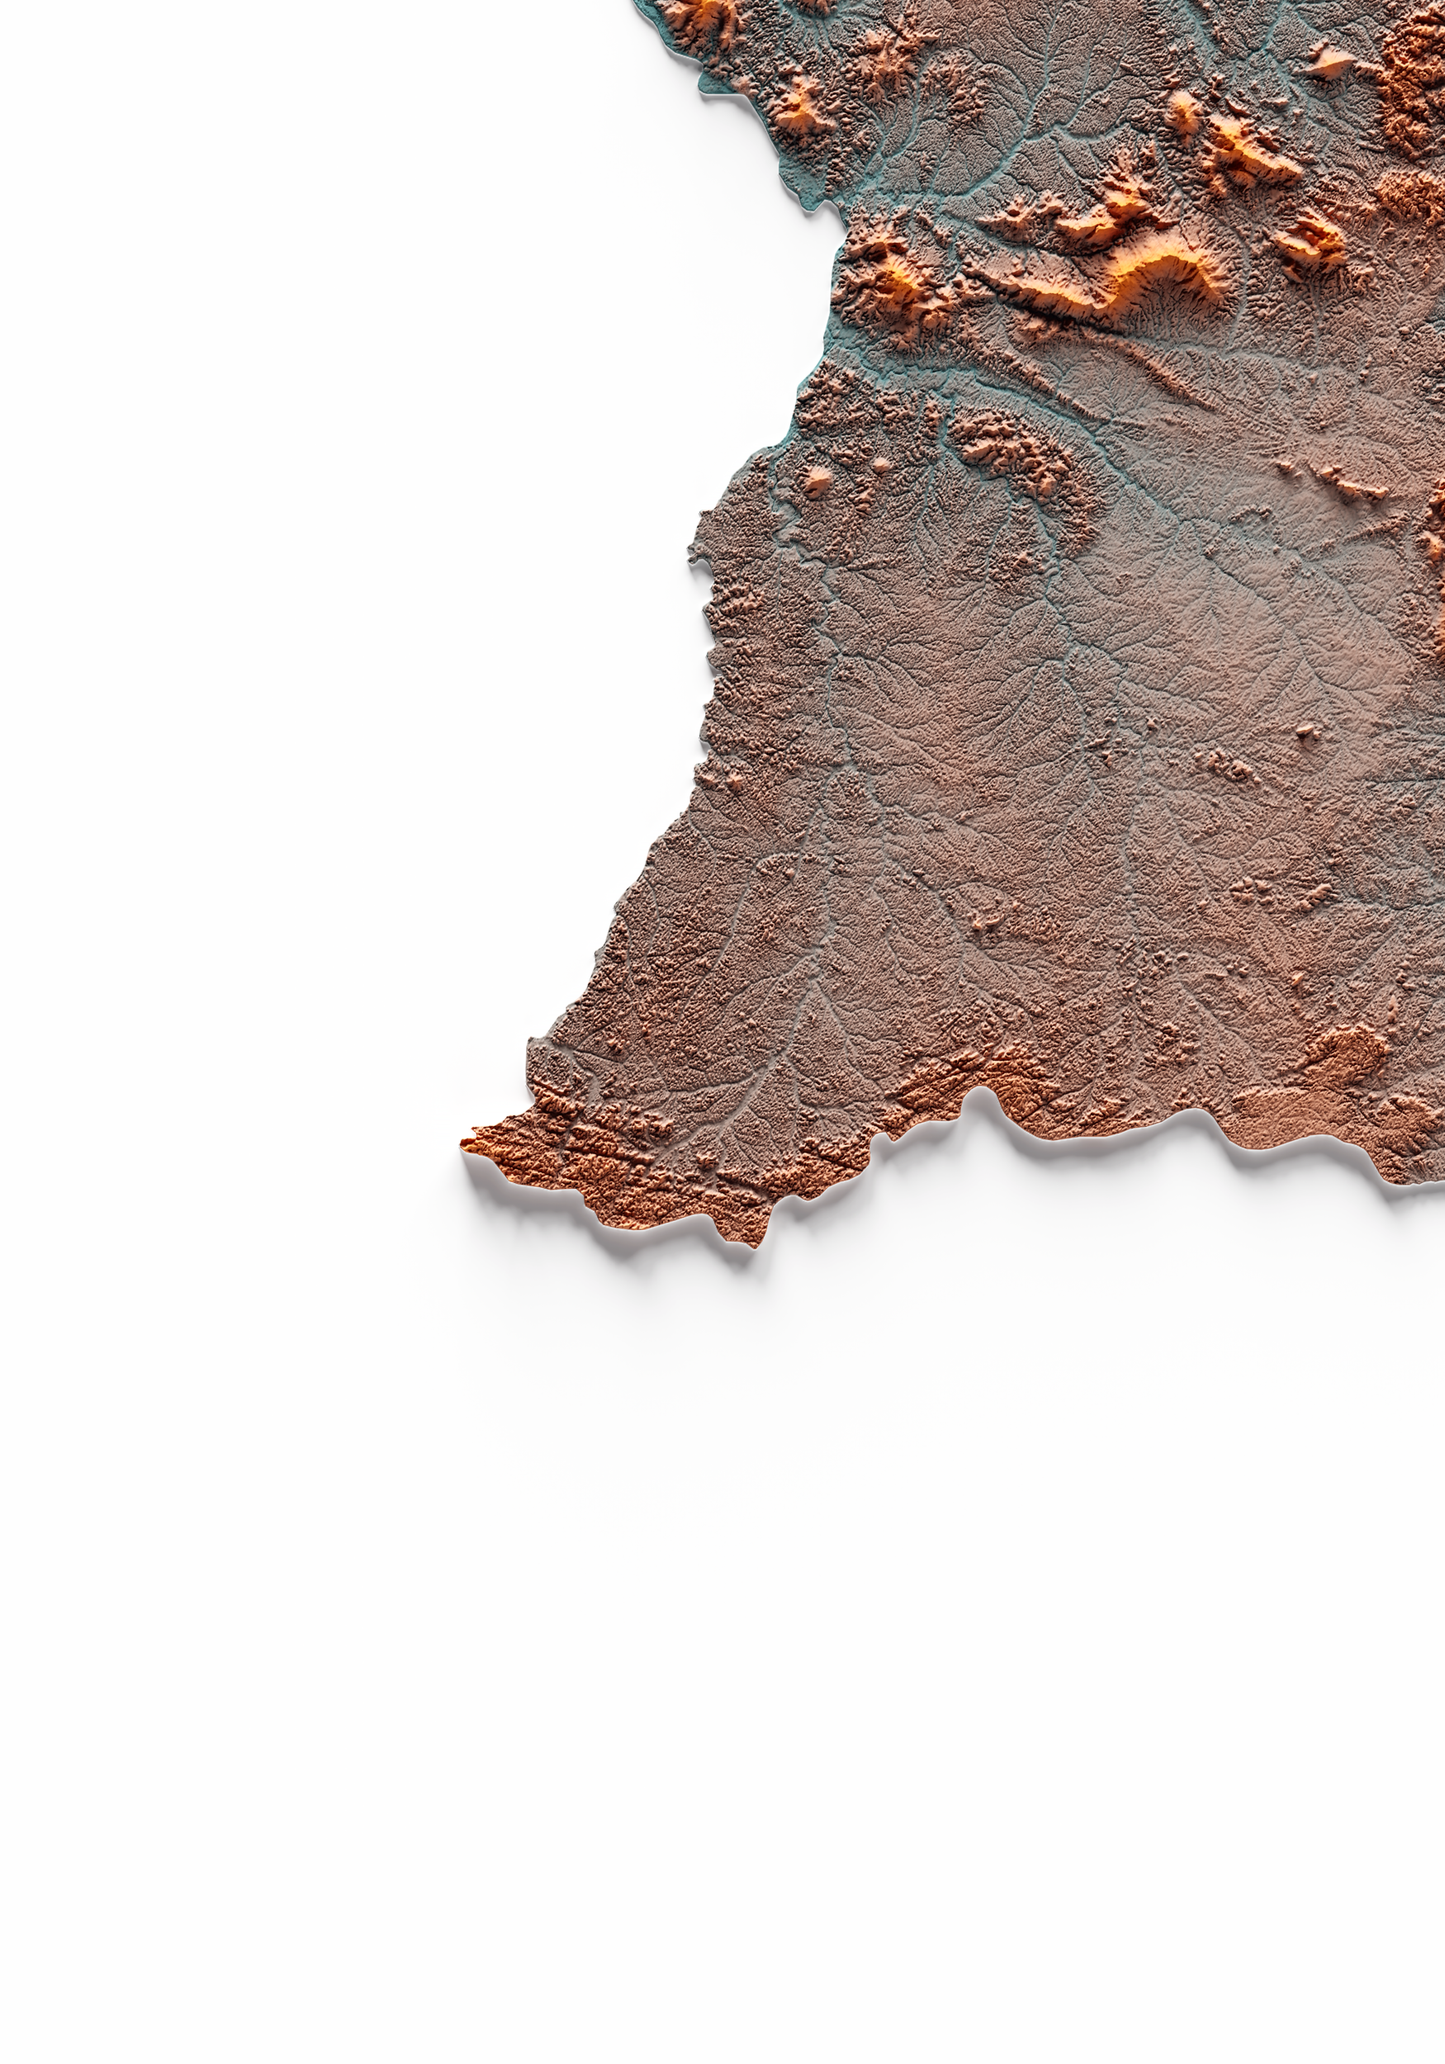 GUIANA FRANCESA. Mapa de relieve con contraste.